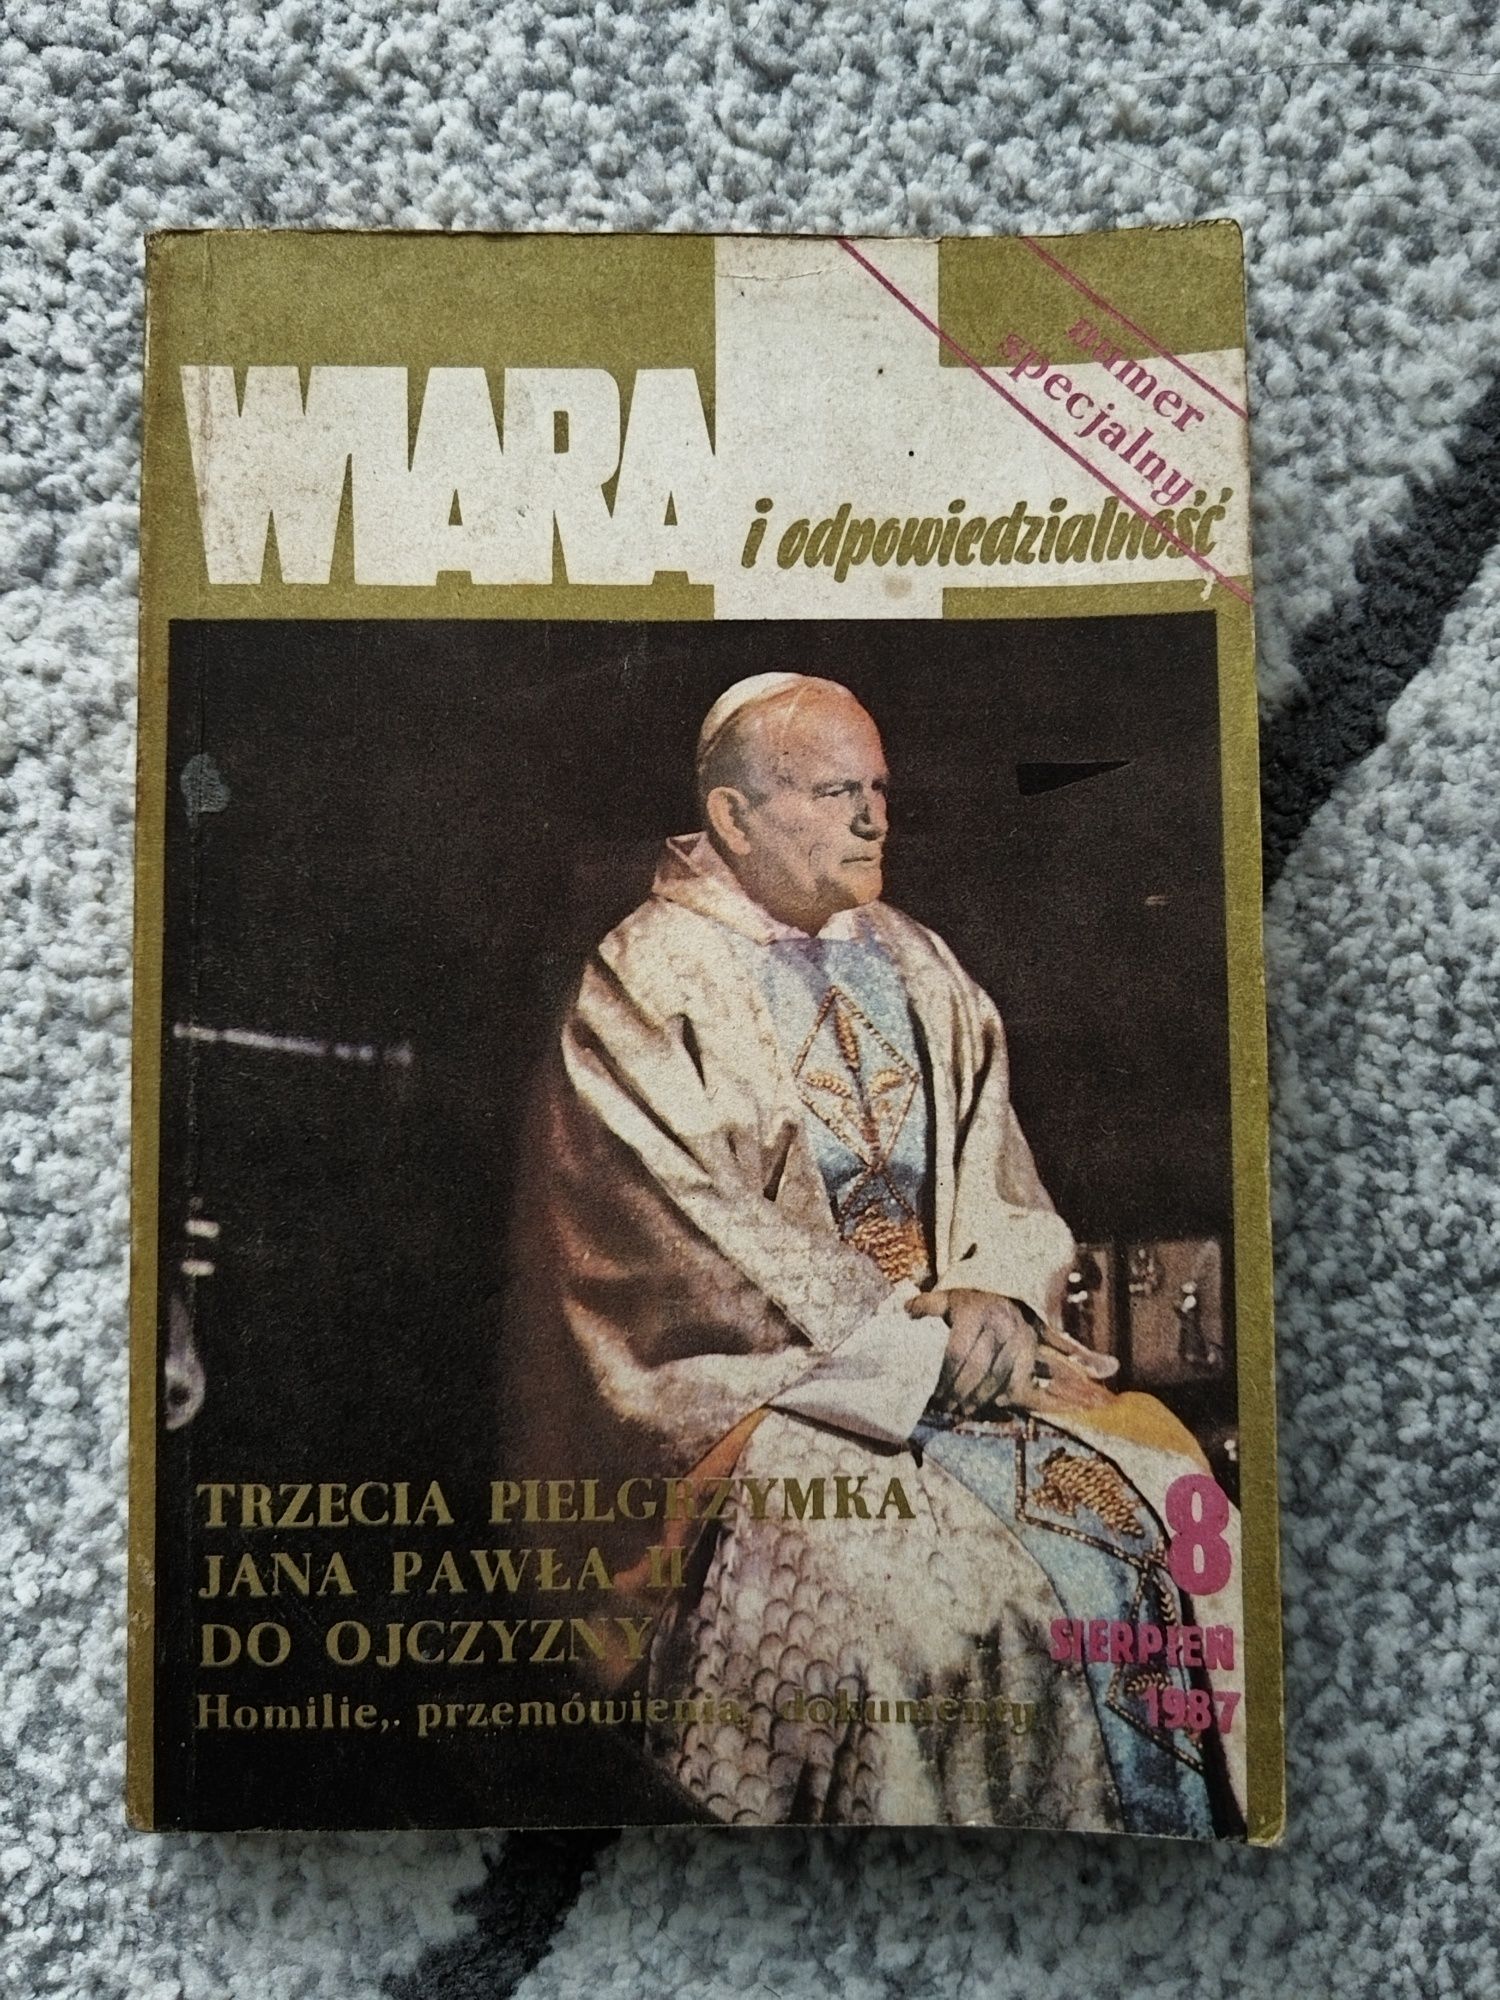 Wiara i odpowiedzialność Trzecia pielgrzymka Jana Pawła II do ojczyzny